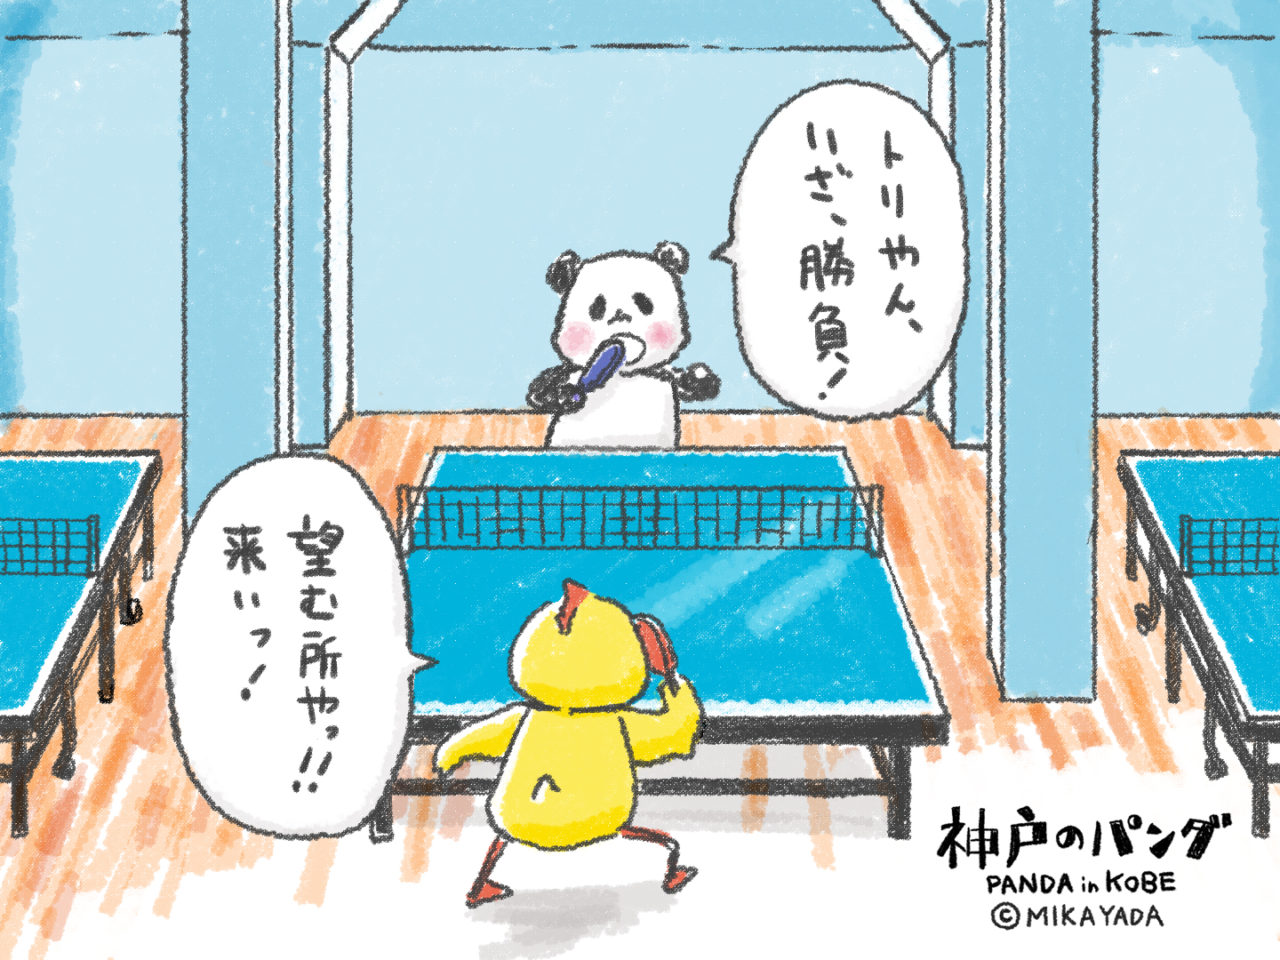 神戸のパンダ、卓球の試合